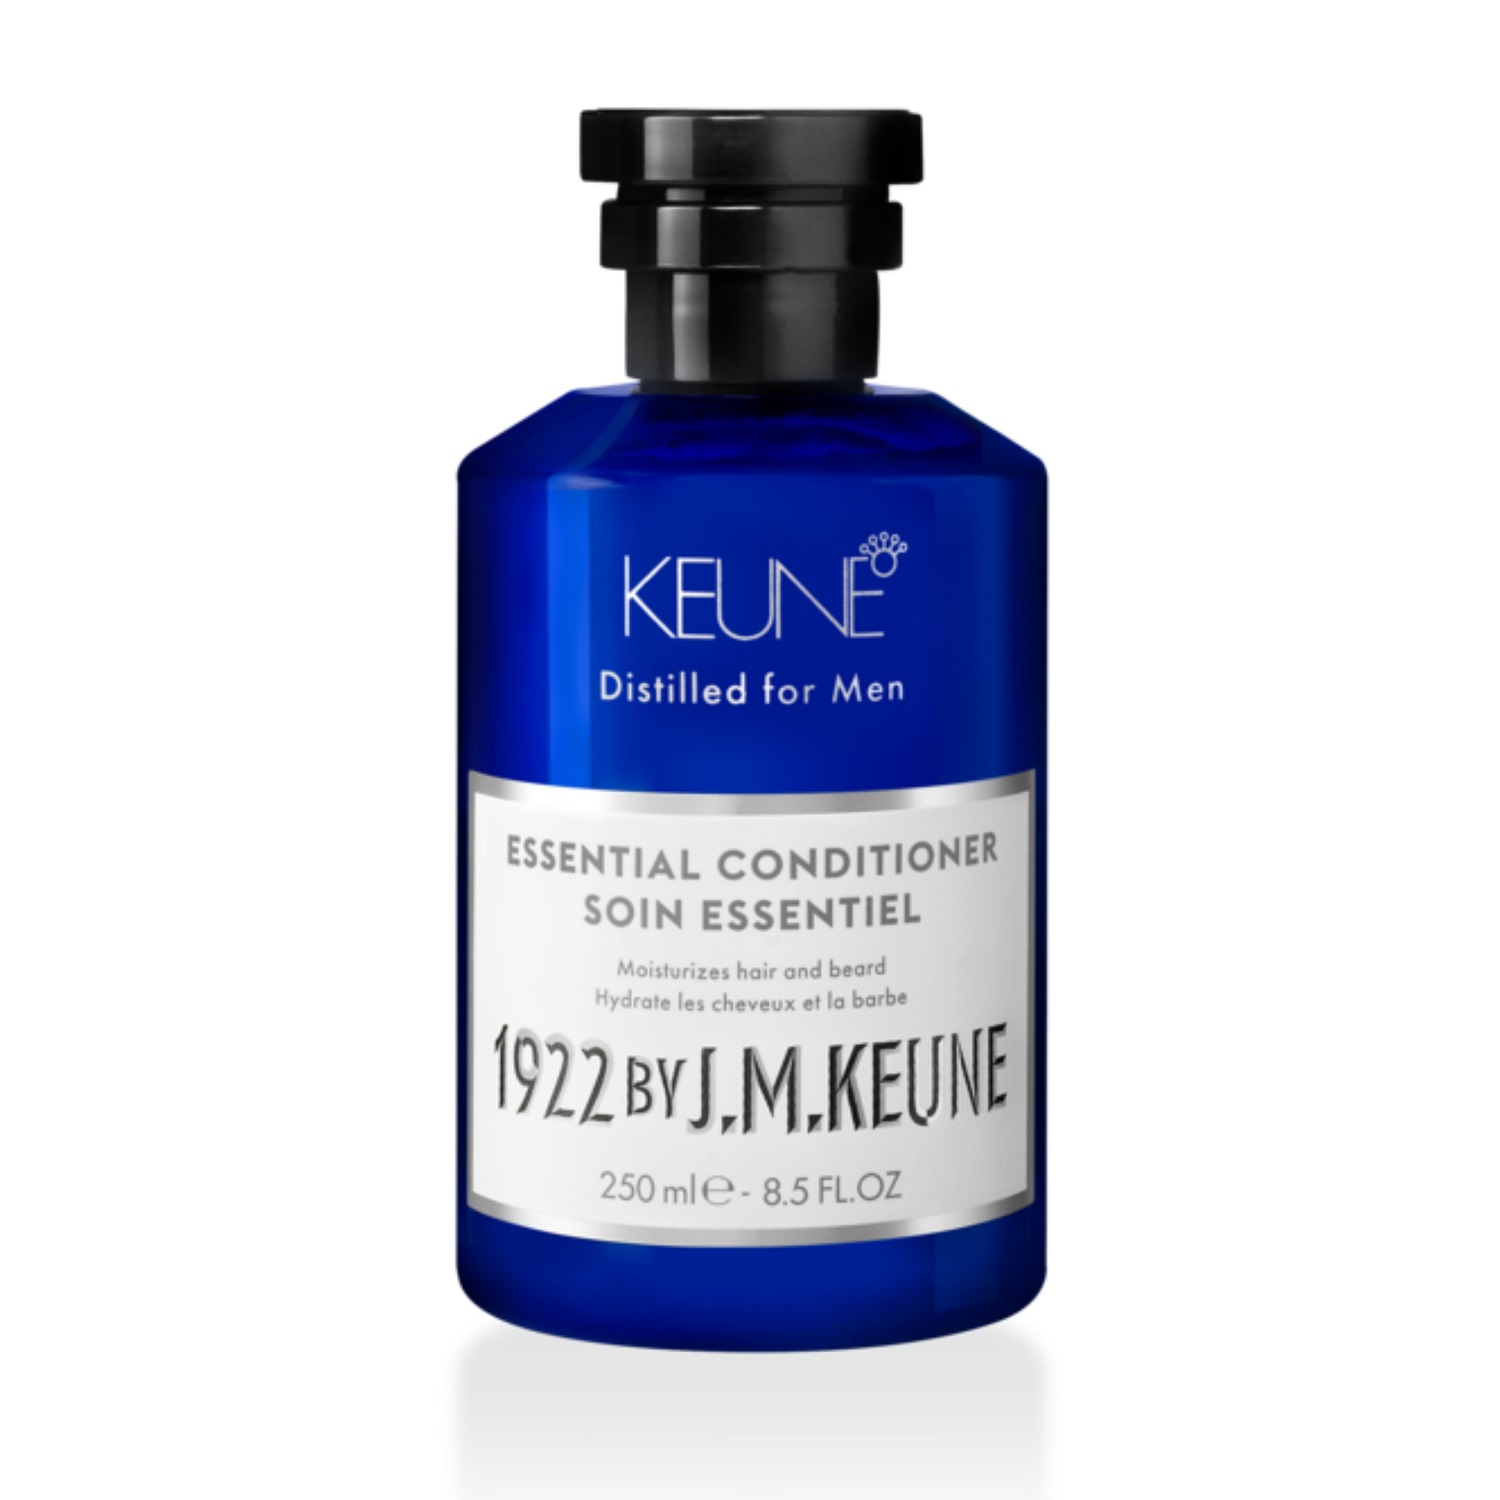 цена Keune Универсальный кондиционер для волос и бороды Essential Conditioner, 250 мл (Keune, 1922 by J.M. Keune)